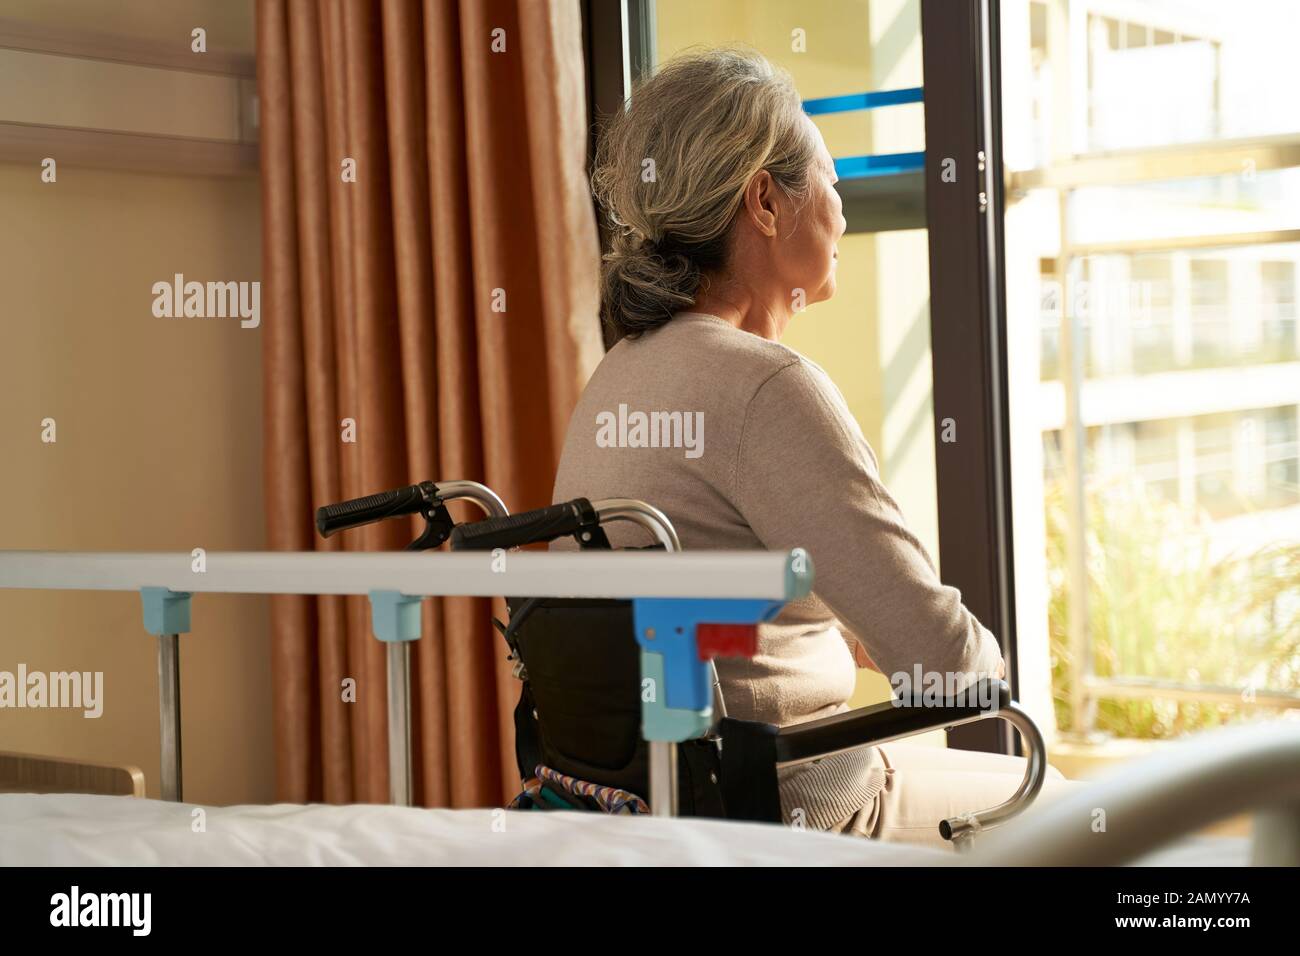 vista posteriore della donna asiatica senior seduta in sedia a rotelle in casa nusing o reparto ospedale che guarda fuori dal finestrino Foto Stock